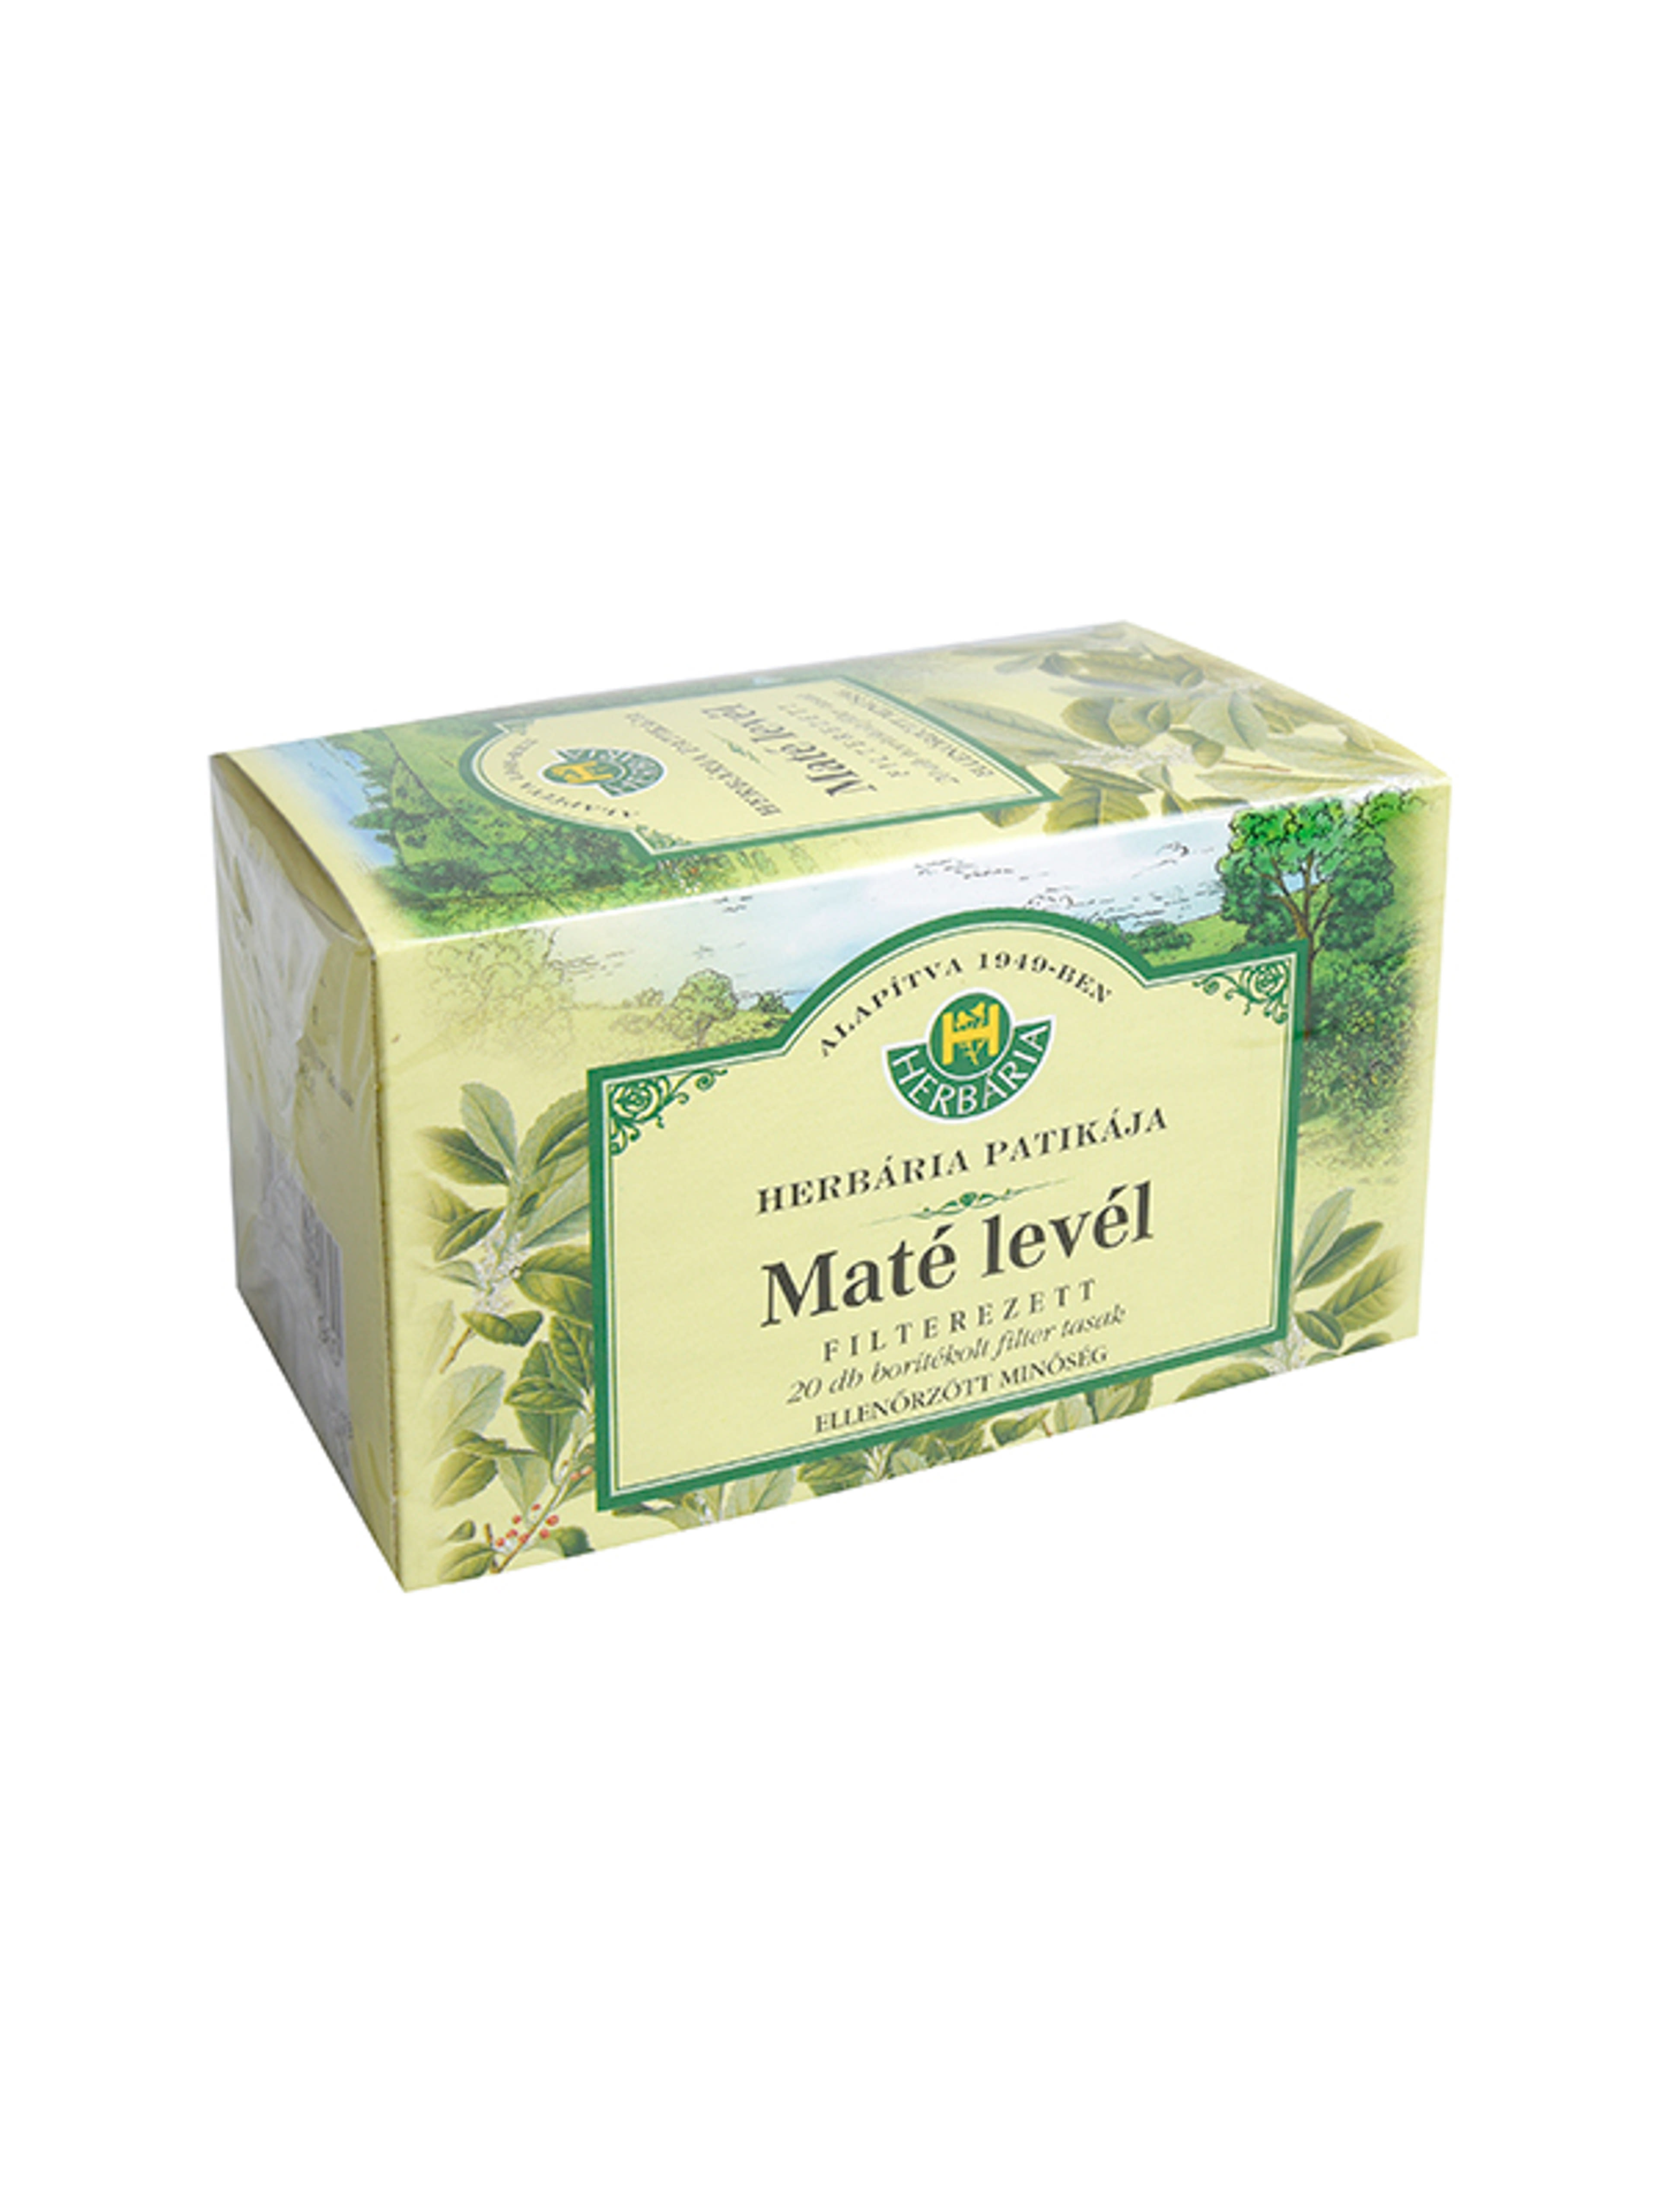 Herbaria mate filteres tea - 30 g